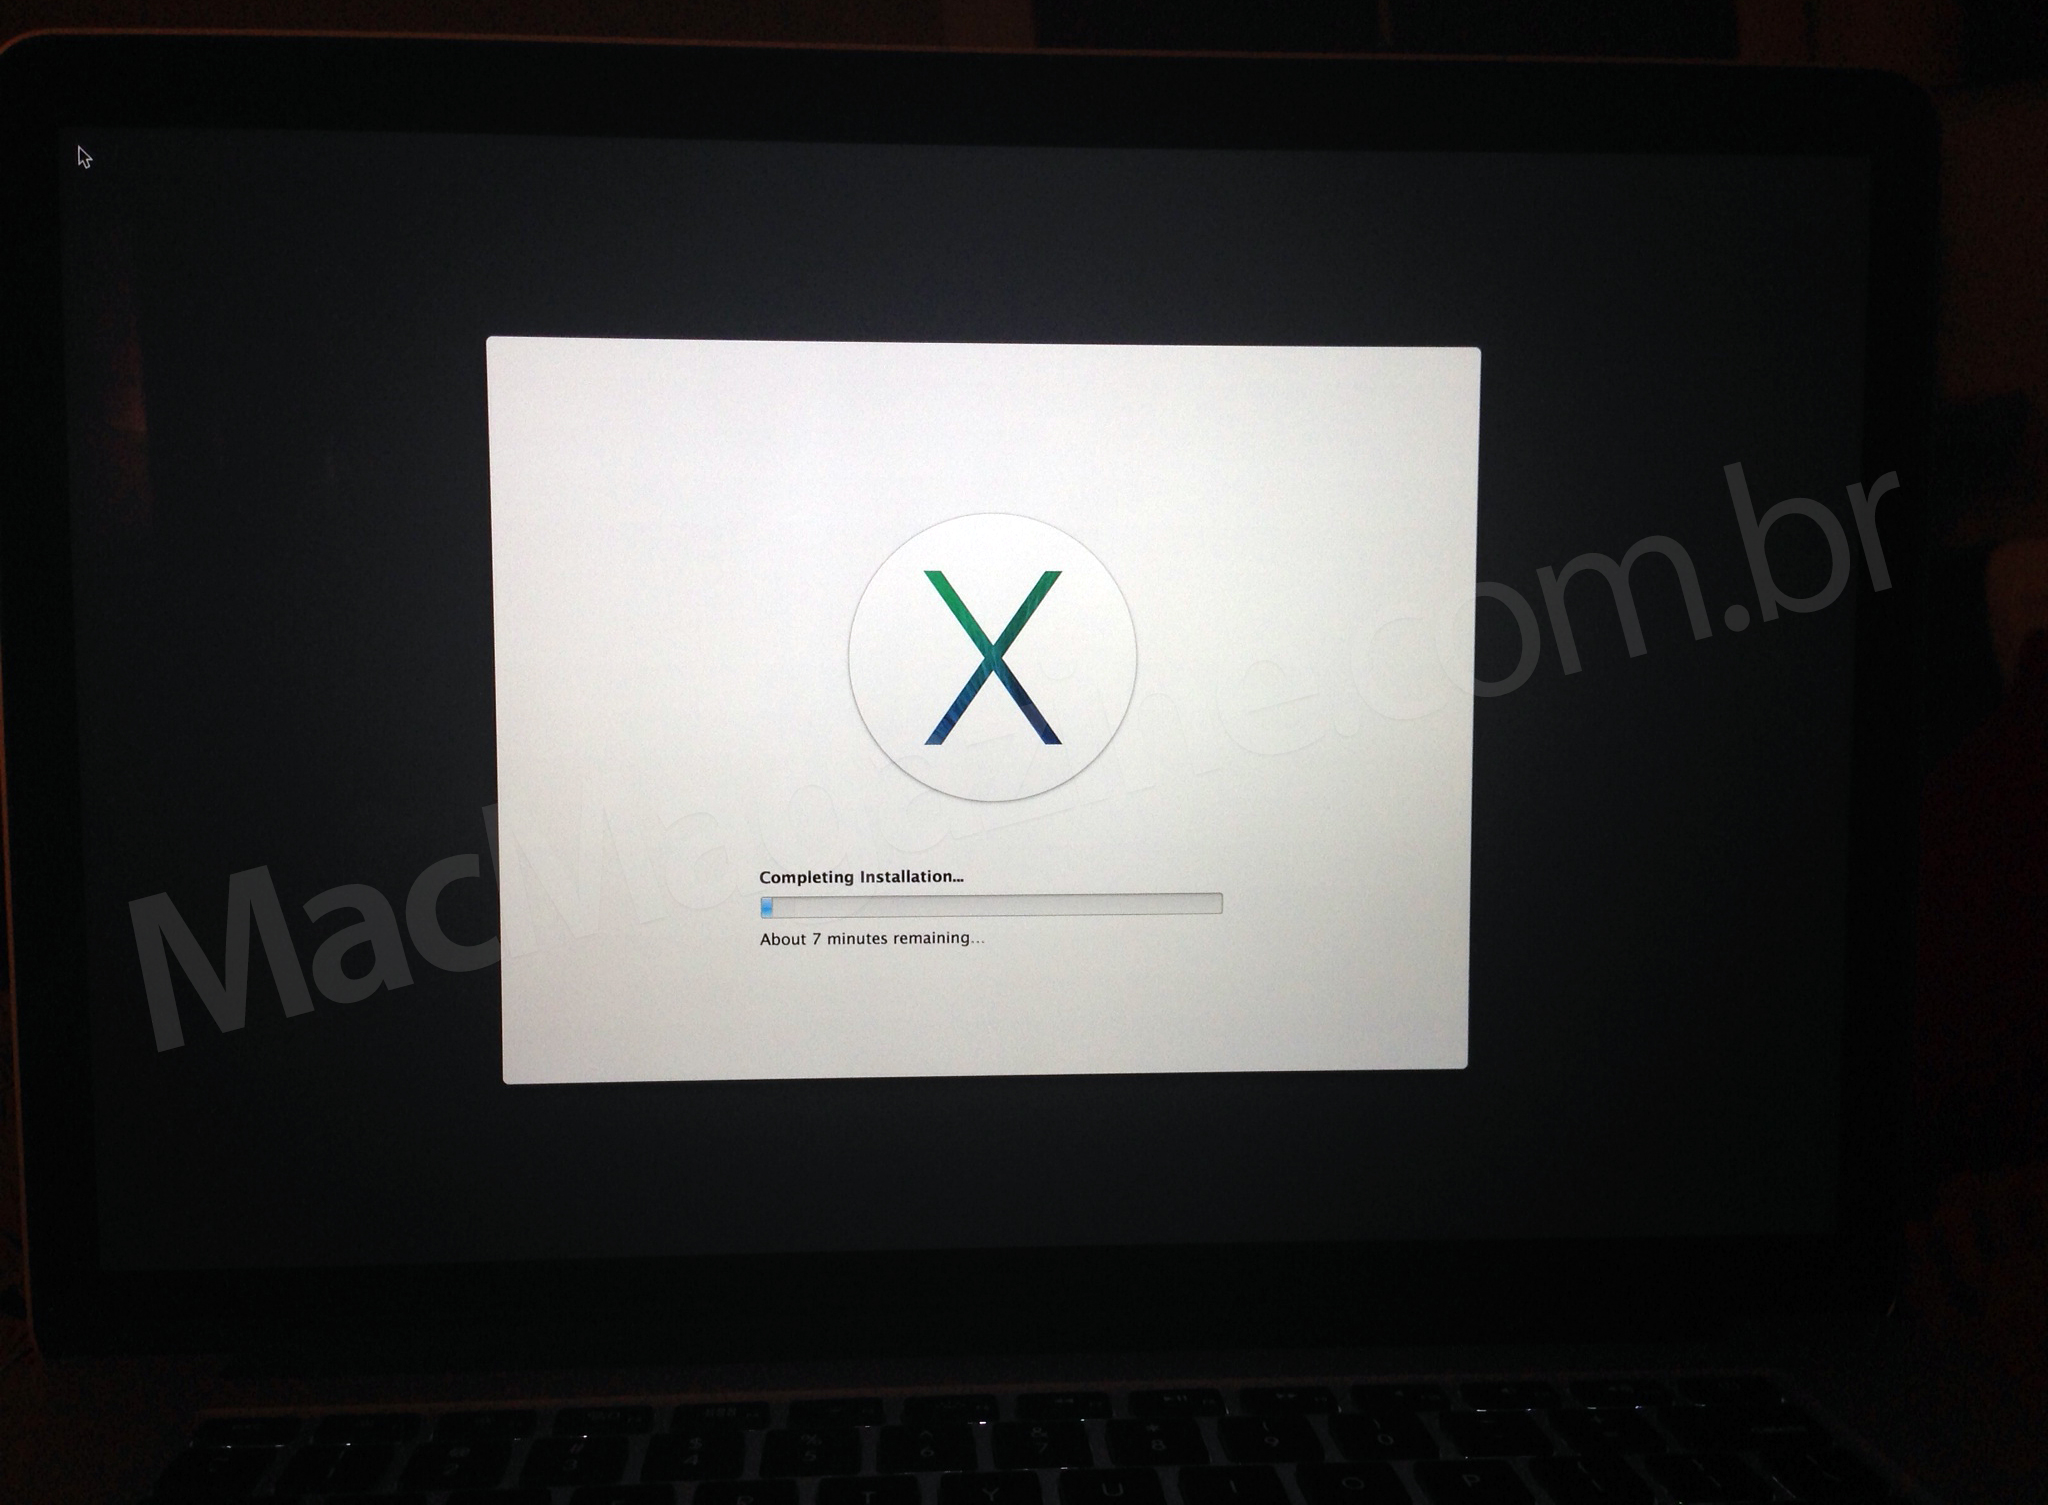 Tela de instalação do OS X Mavericks